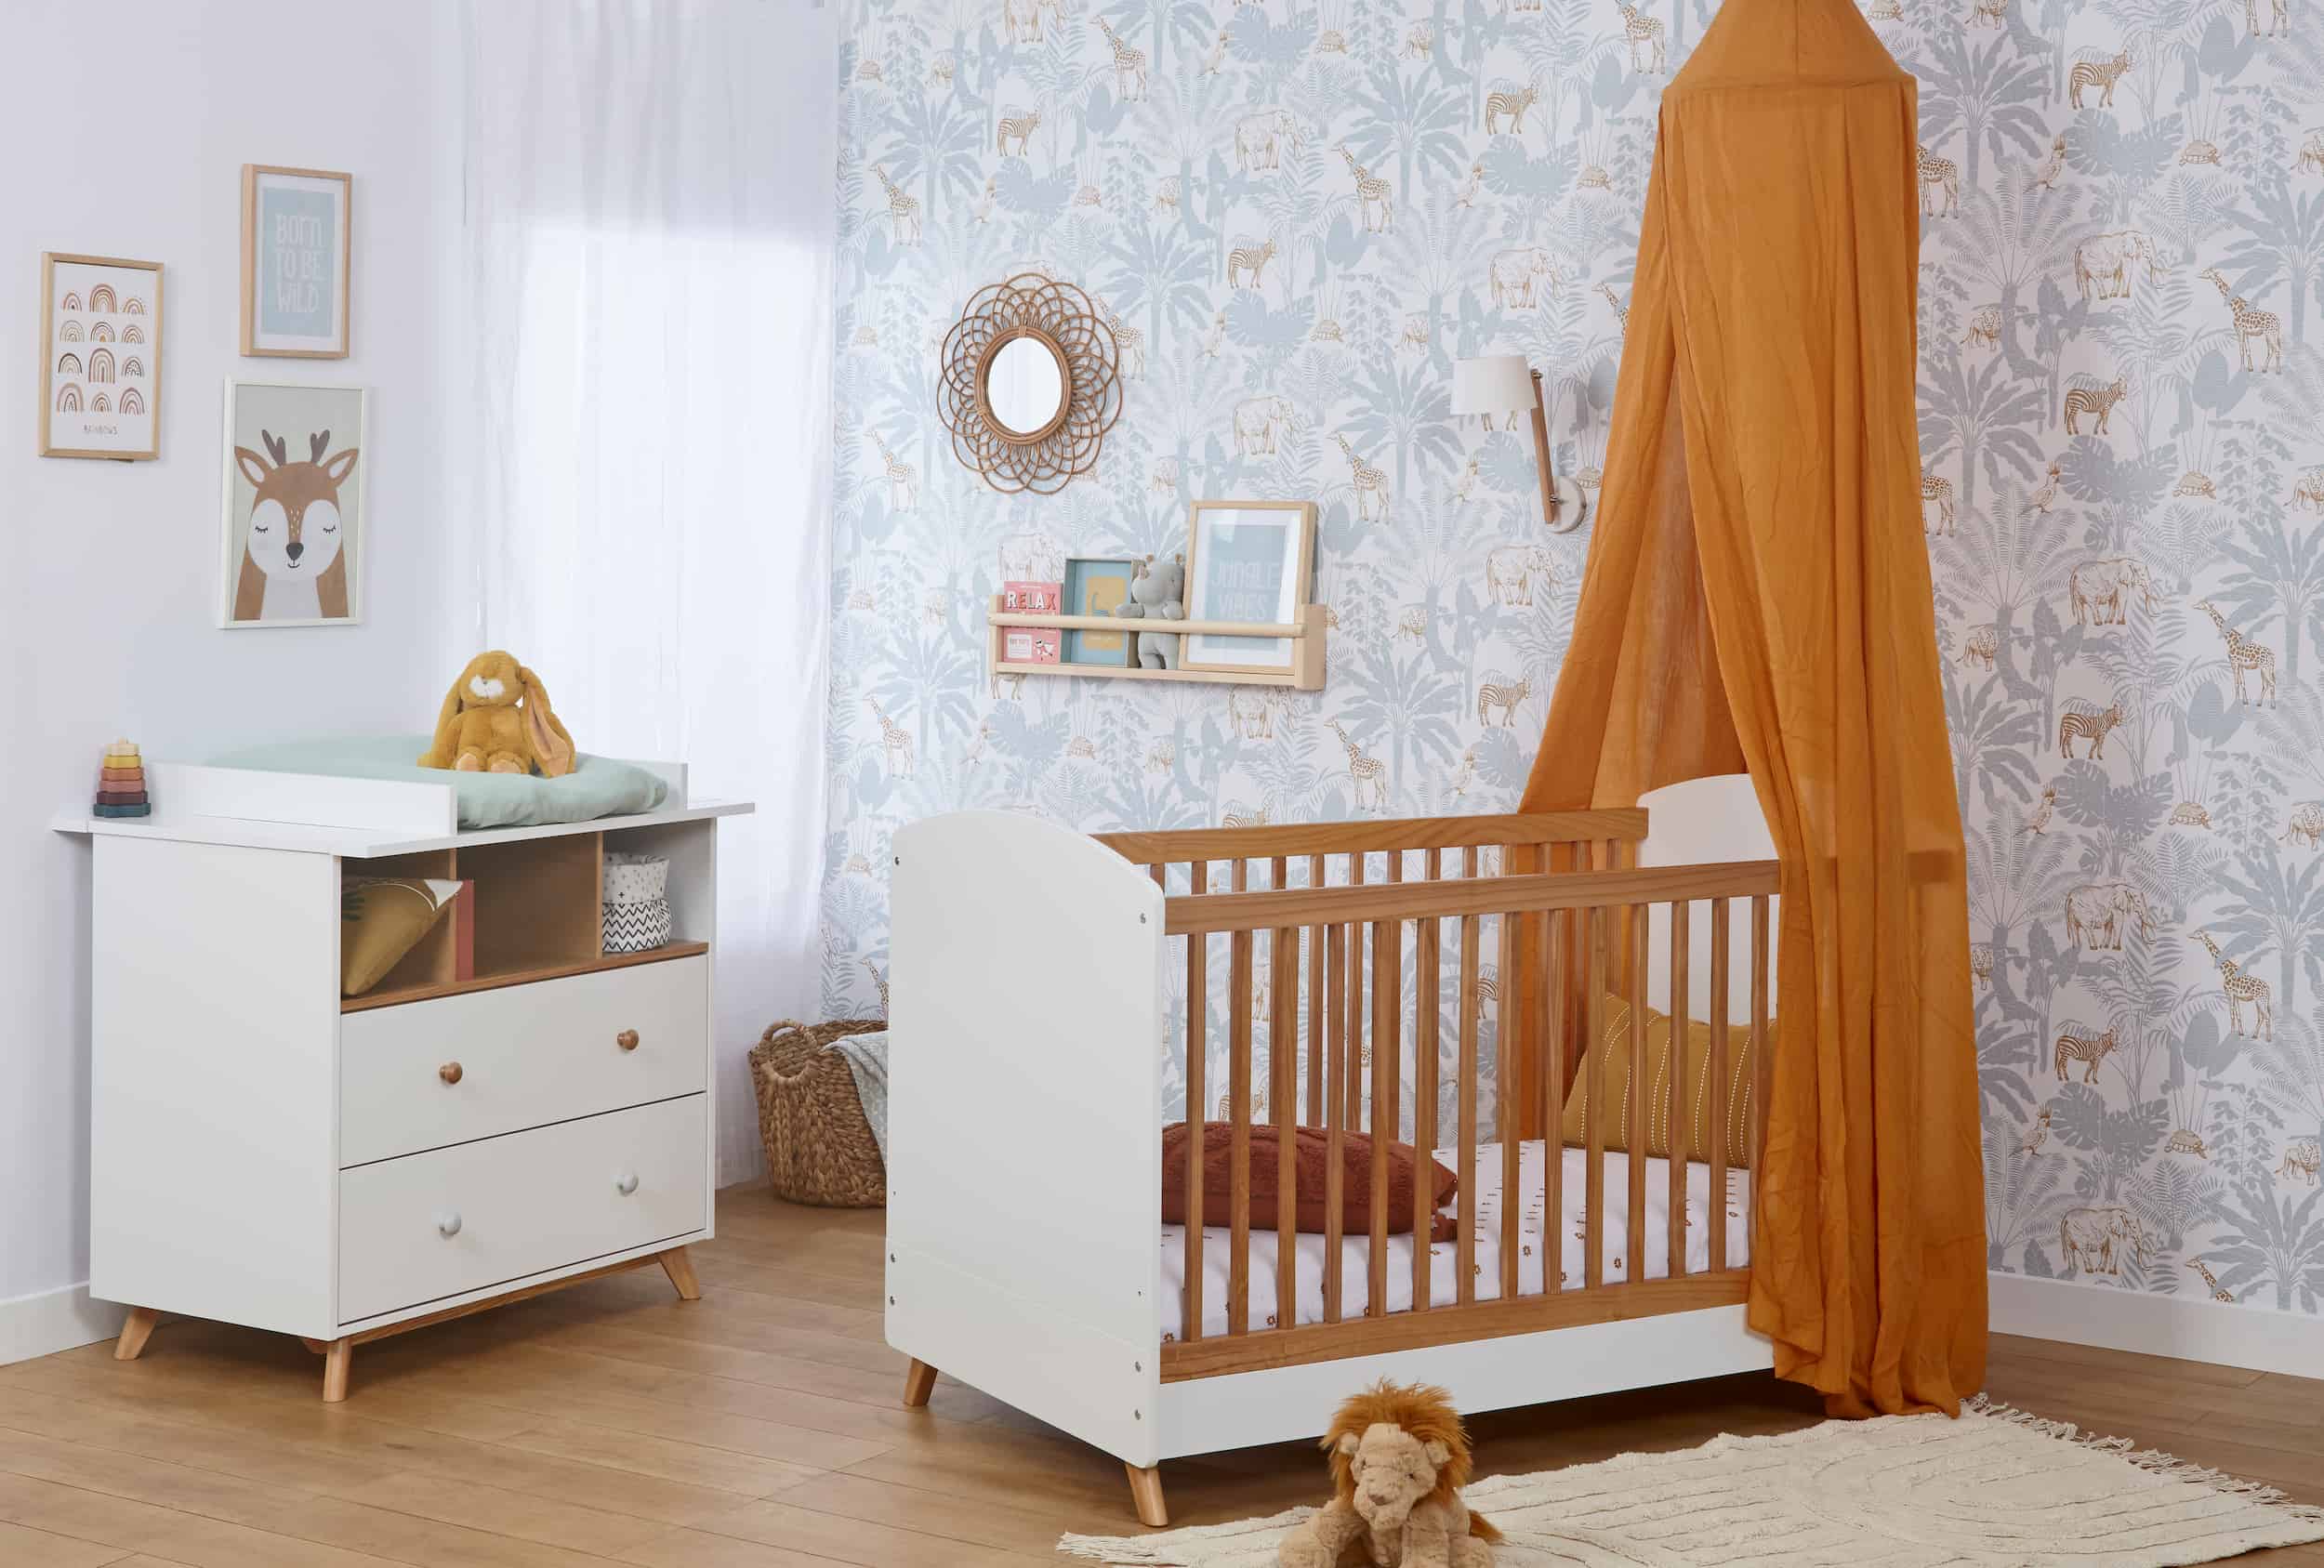 Nos idées pour décorer une chambre bébé ou une chambre enfant - Blog